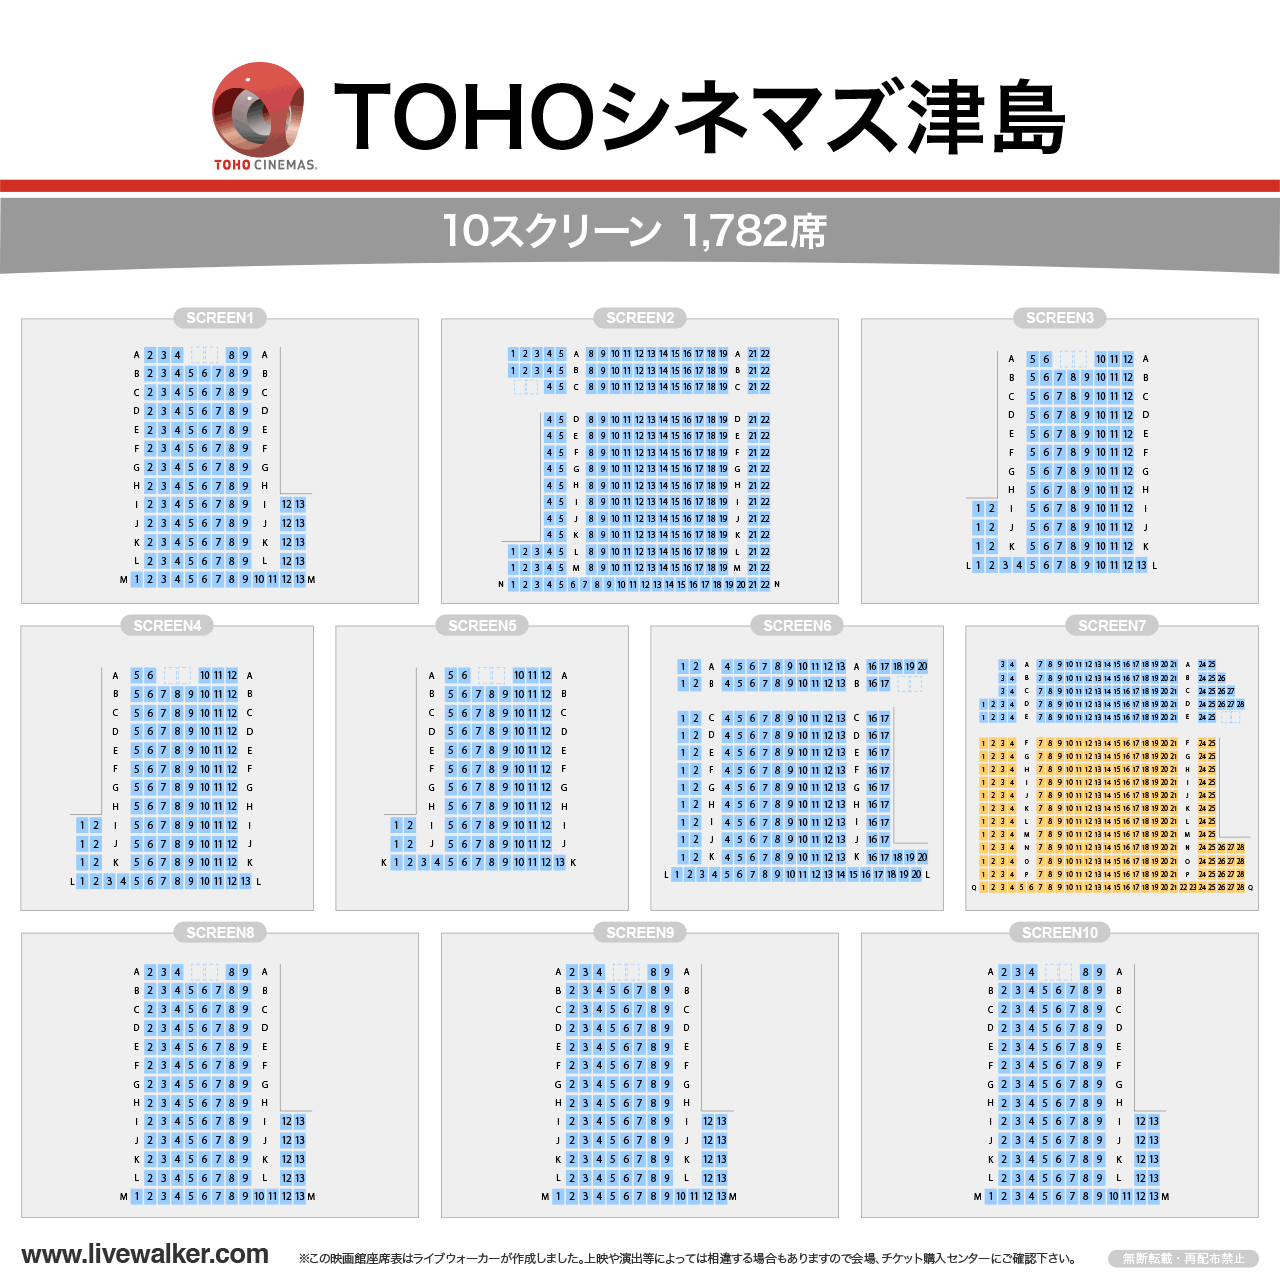 TOHOシネマズ津島スクリーンの座席表